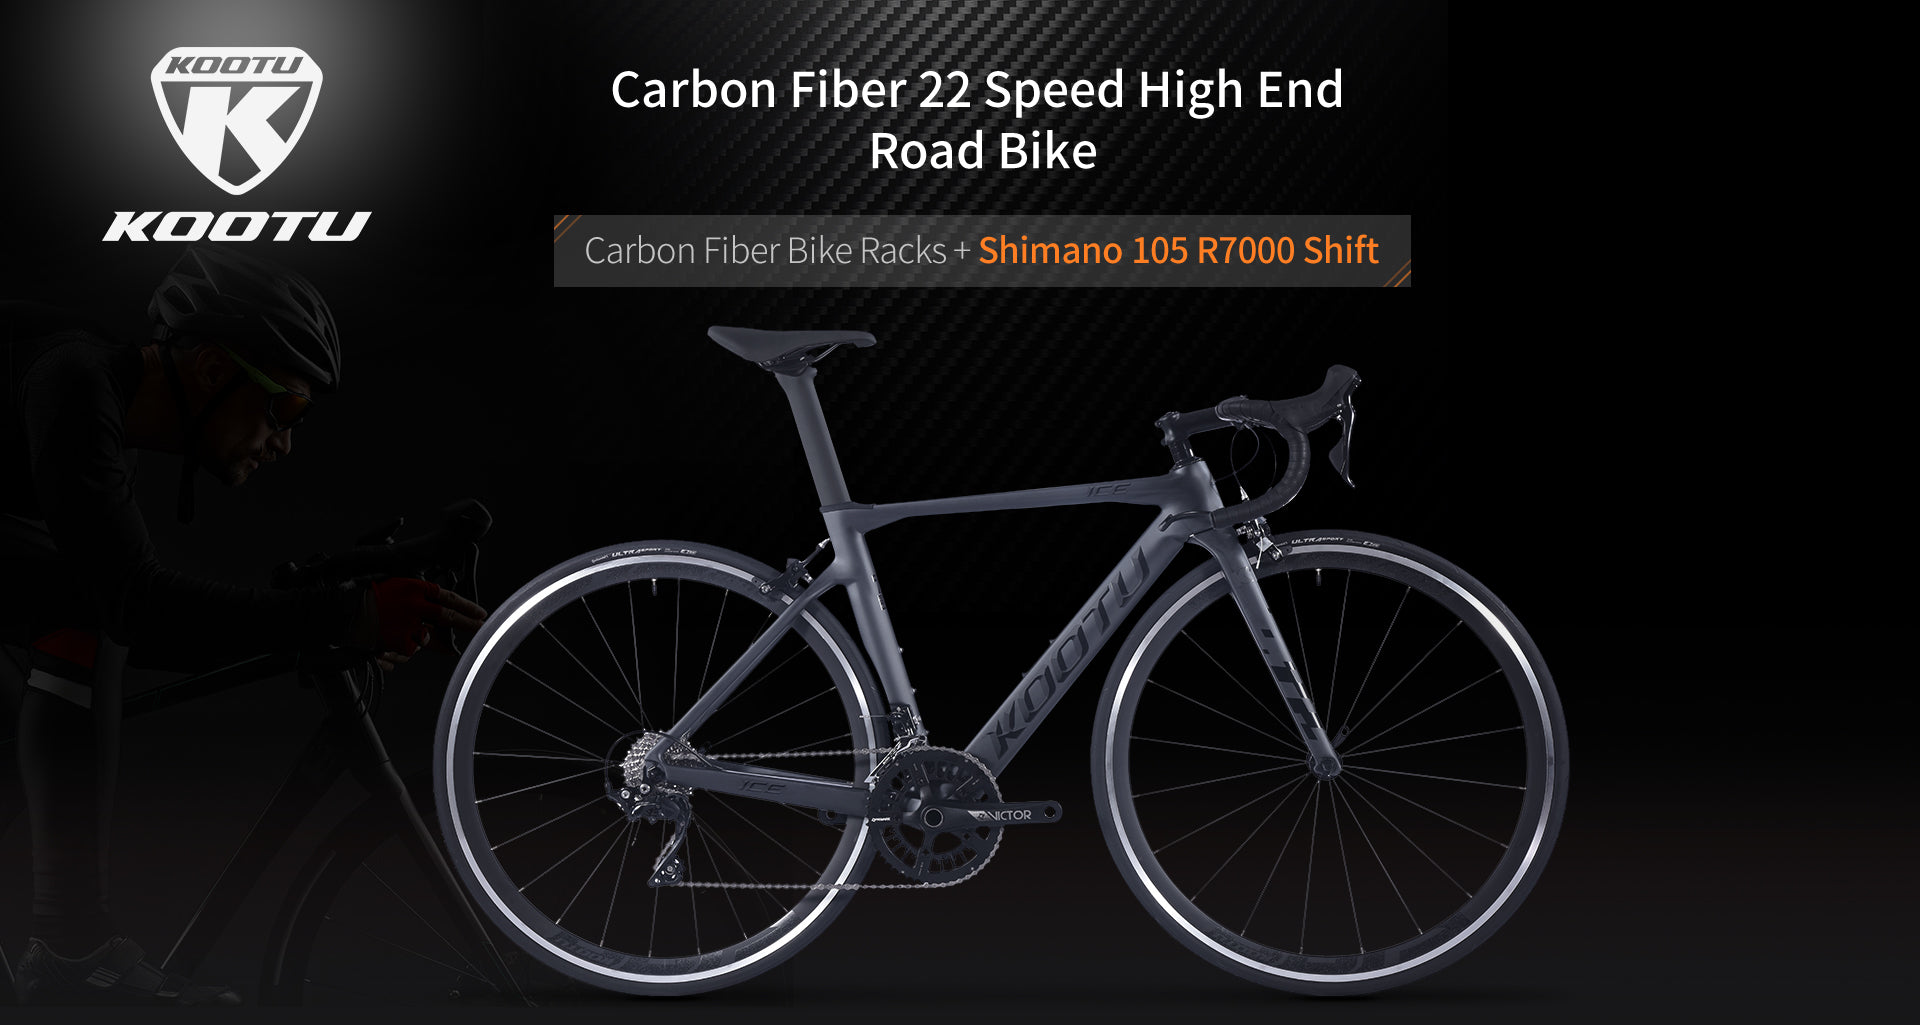 shimano 105 R7000|carbon fiber bike|kootu v5